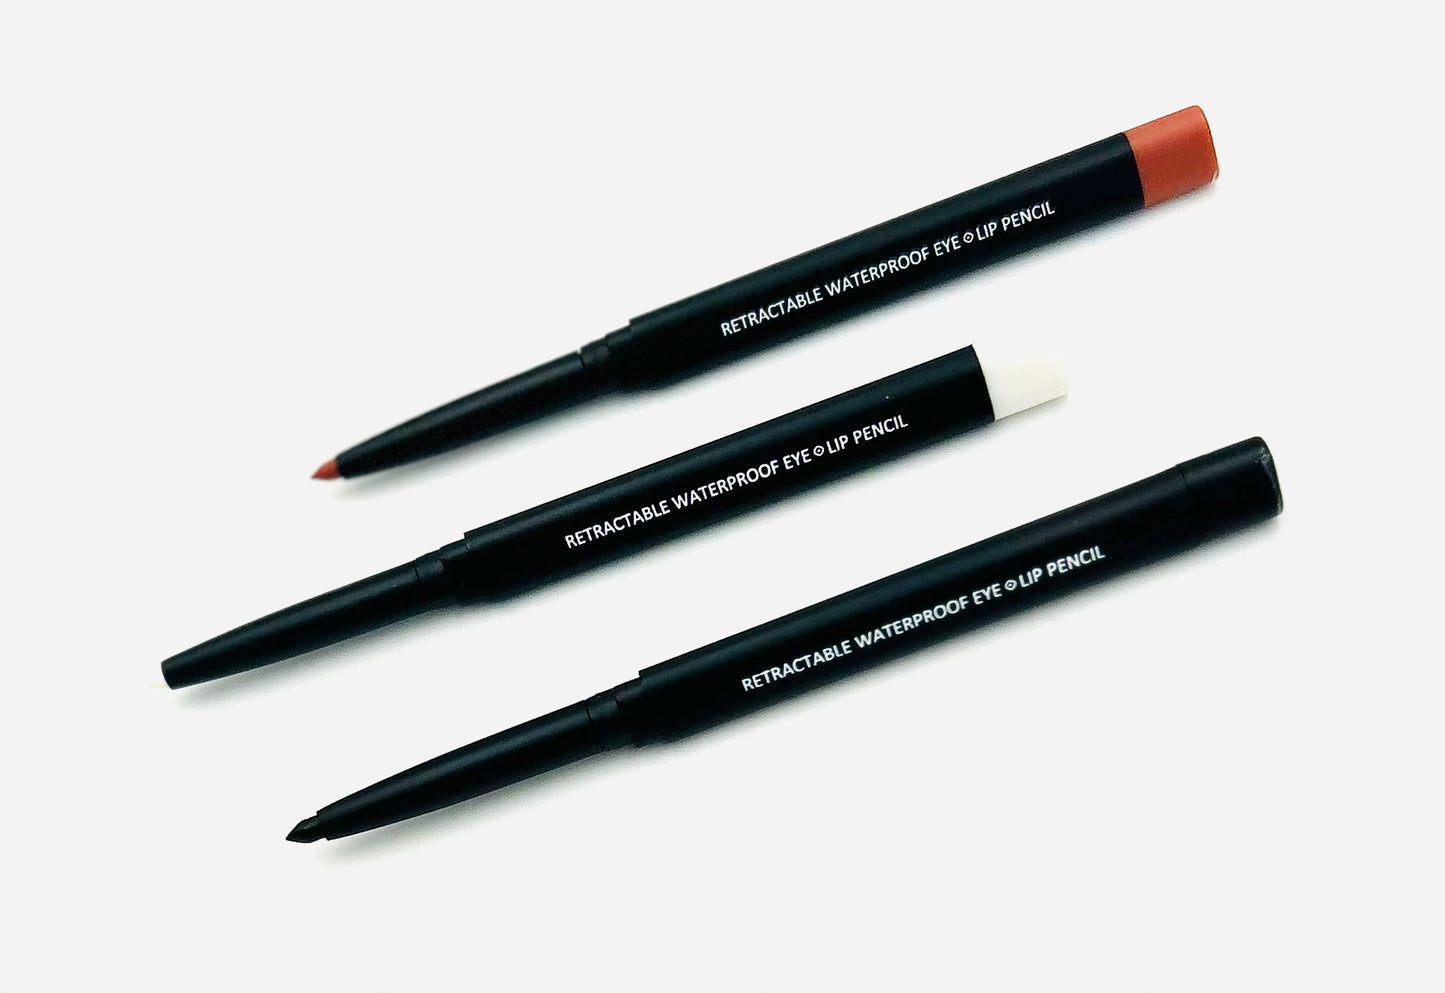 Waterproof Eye & Lip Pencil - 3 Colors